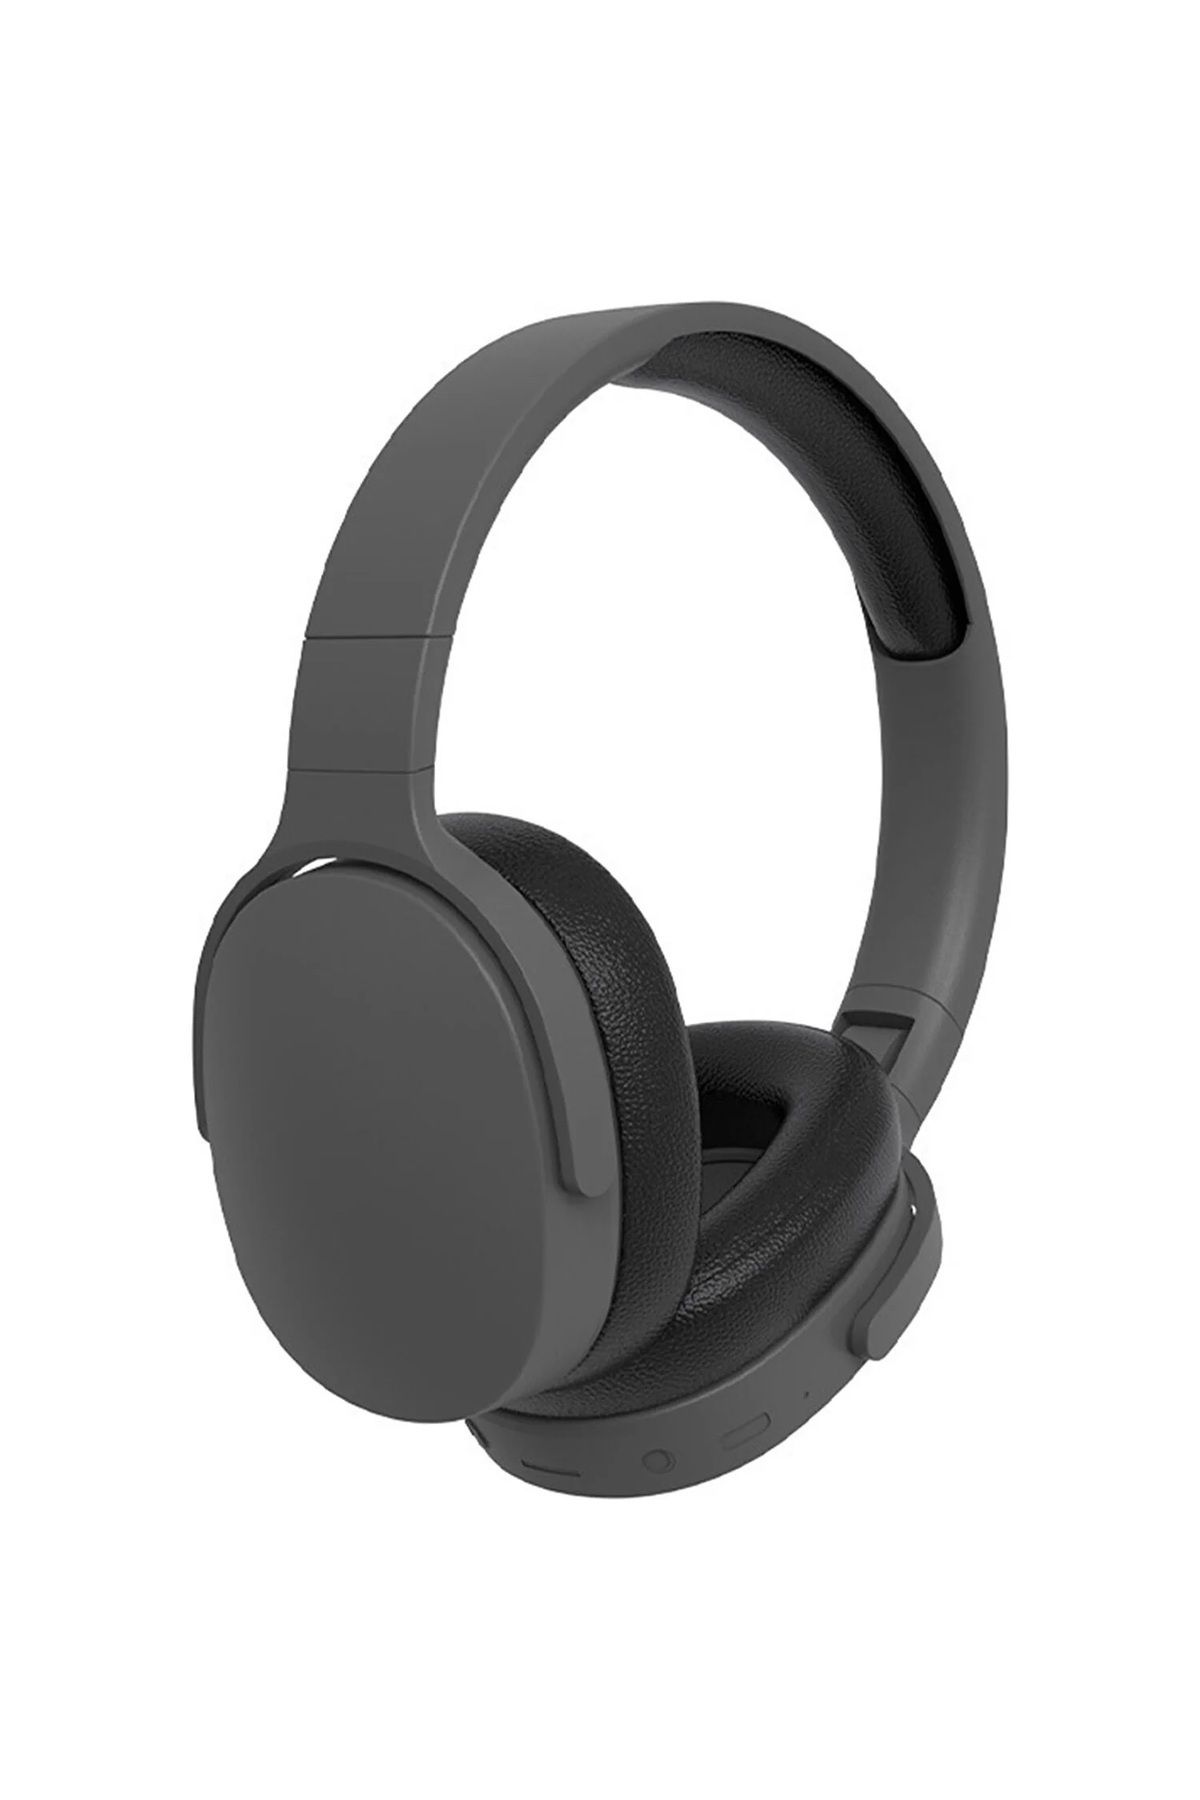 Mmctech Yeni Nesil Şık Ergonomik Tasarım Extra Bass Kablosuz Bluetooth Mikrofonlu Spor Kulaklık Sd Kartlı